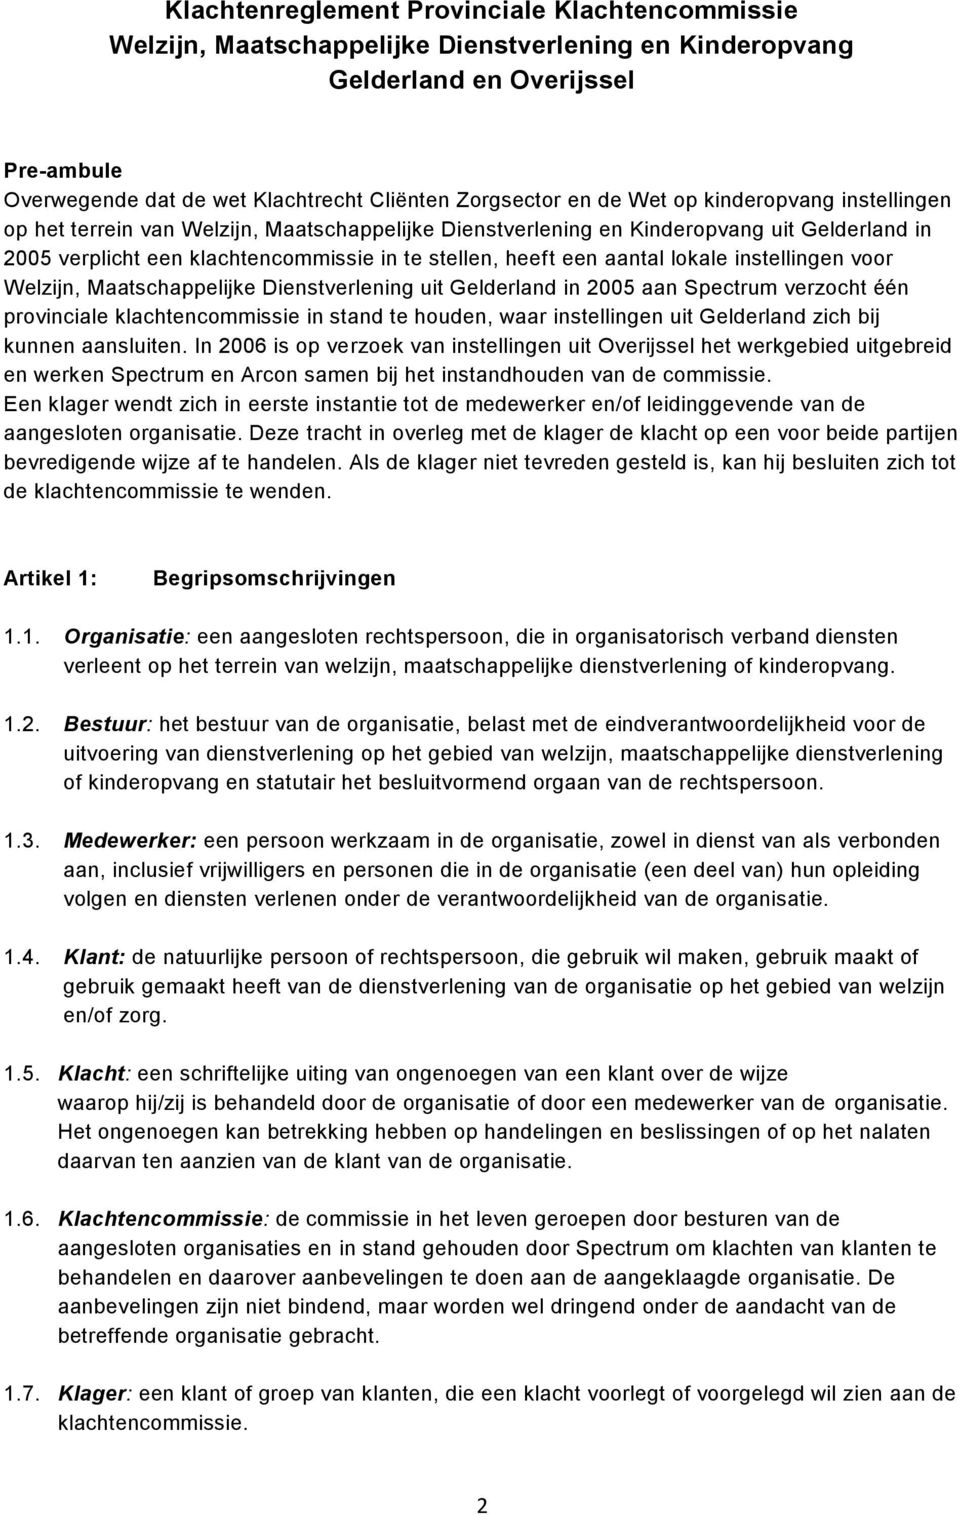 lokale instellingen voor Welzijn, Maatschappelijke Dienstverlening uit Gelderland in 2005 aan Spectrum verzocht één provinciale klachtencommissie in stand te houden, waar instellingen uit Gelderland